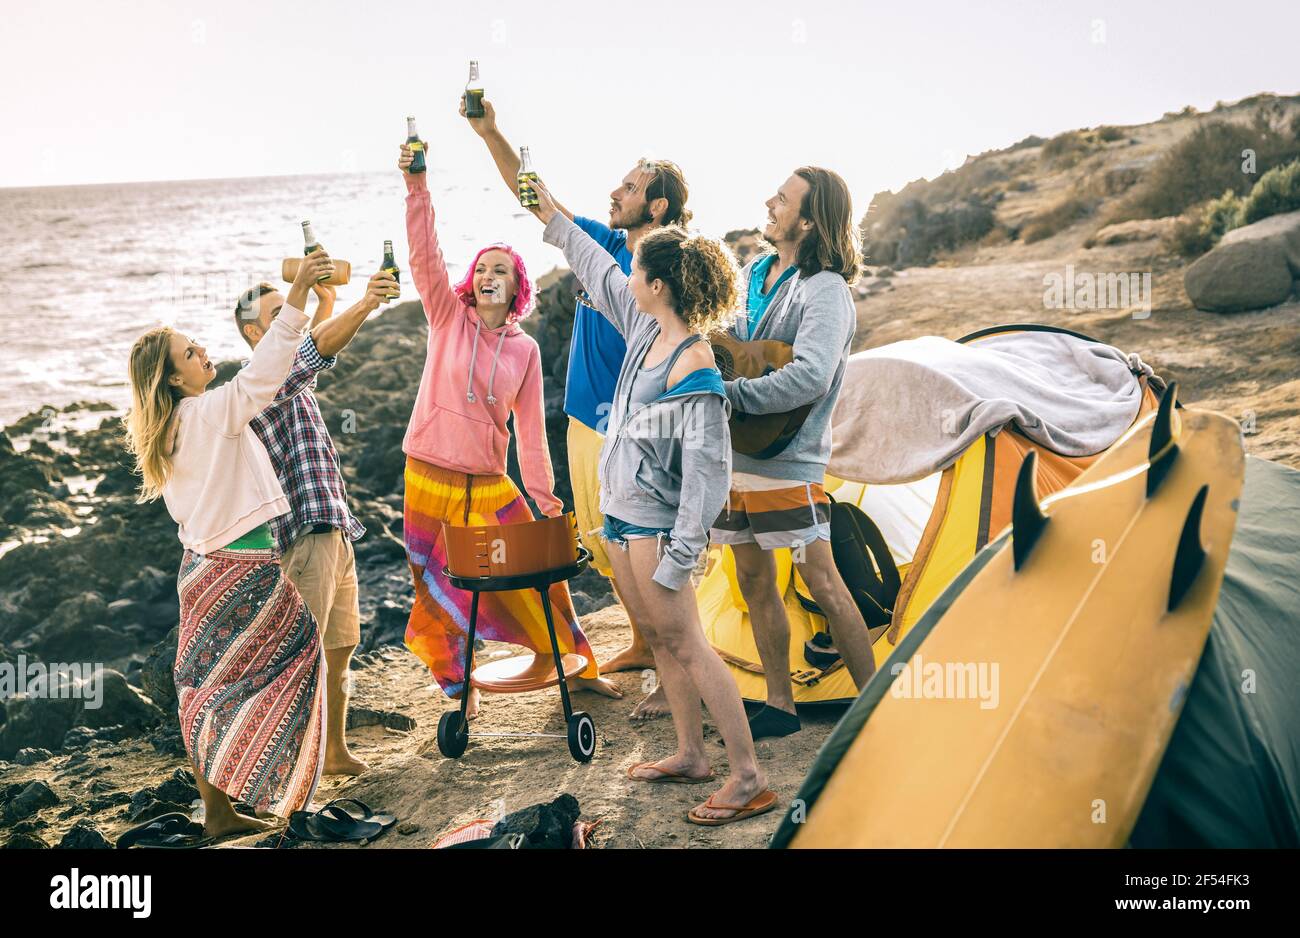 Amis de la taille basse s'amuser ensemble à la fête de camping de plage - Concept de voyage d'amitié avec les jeunes voyageurs de la dégustation et de la boisson bière en bouteille Banque D'Images